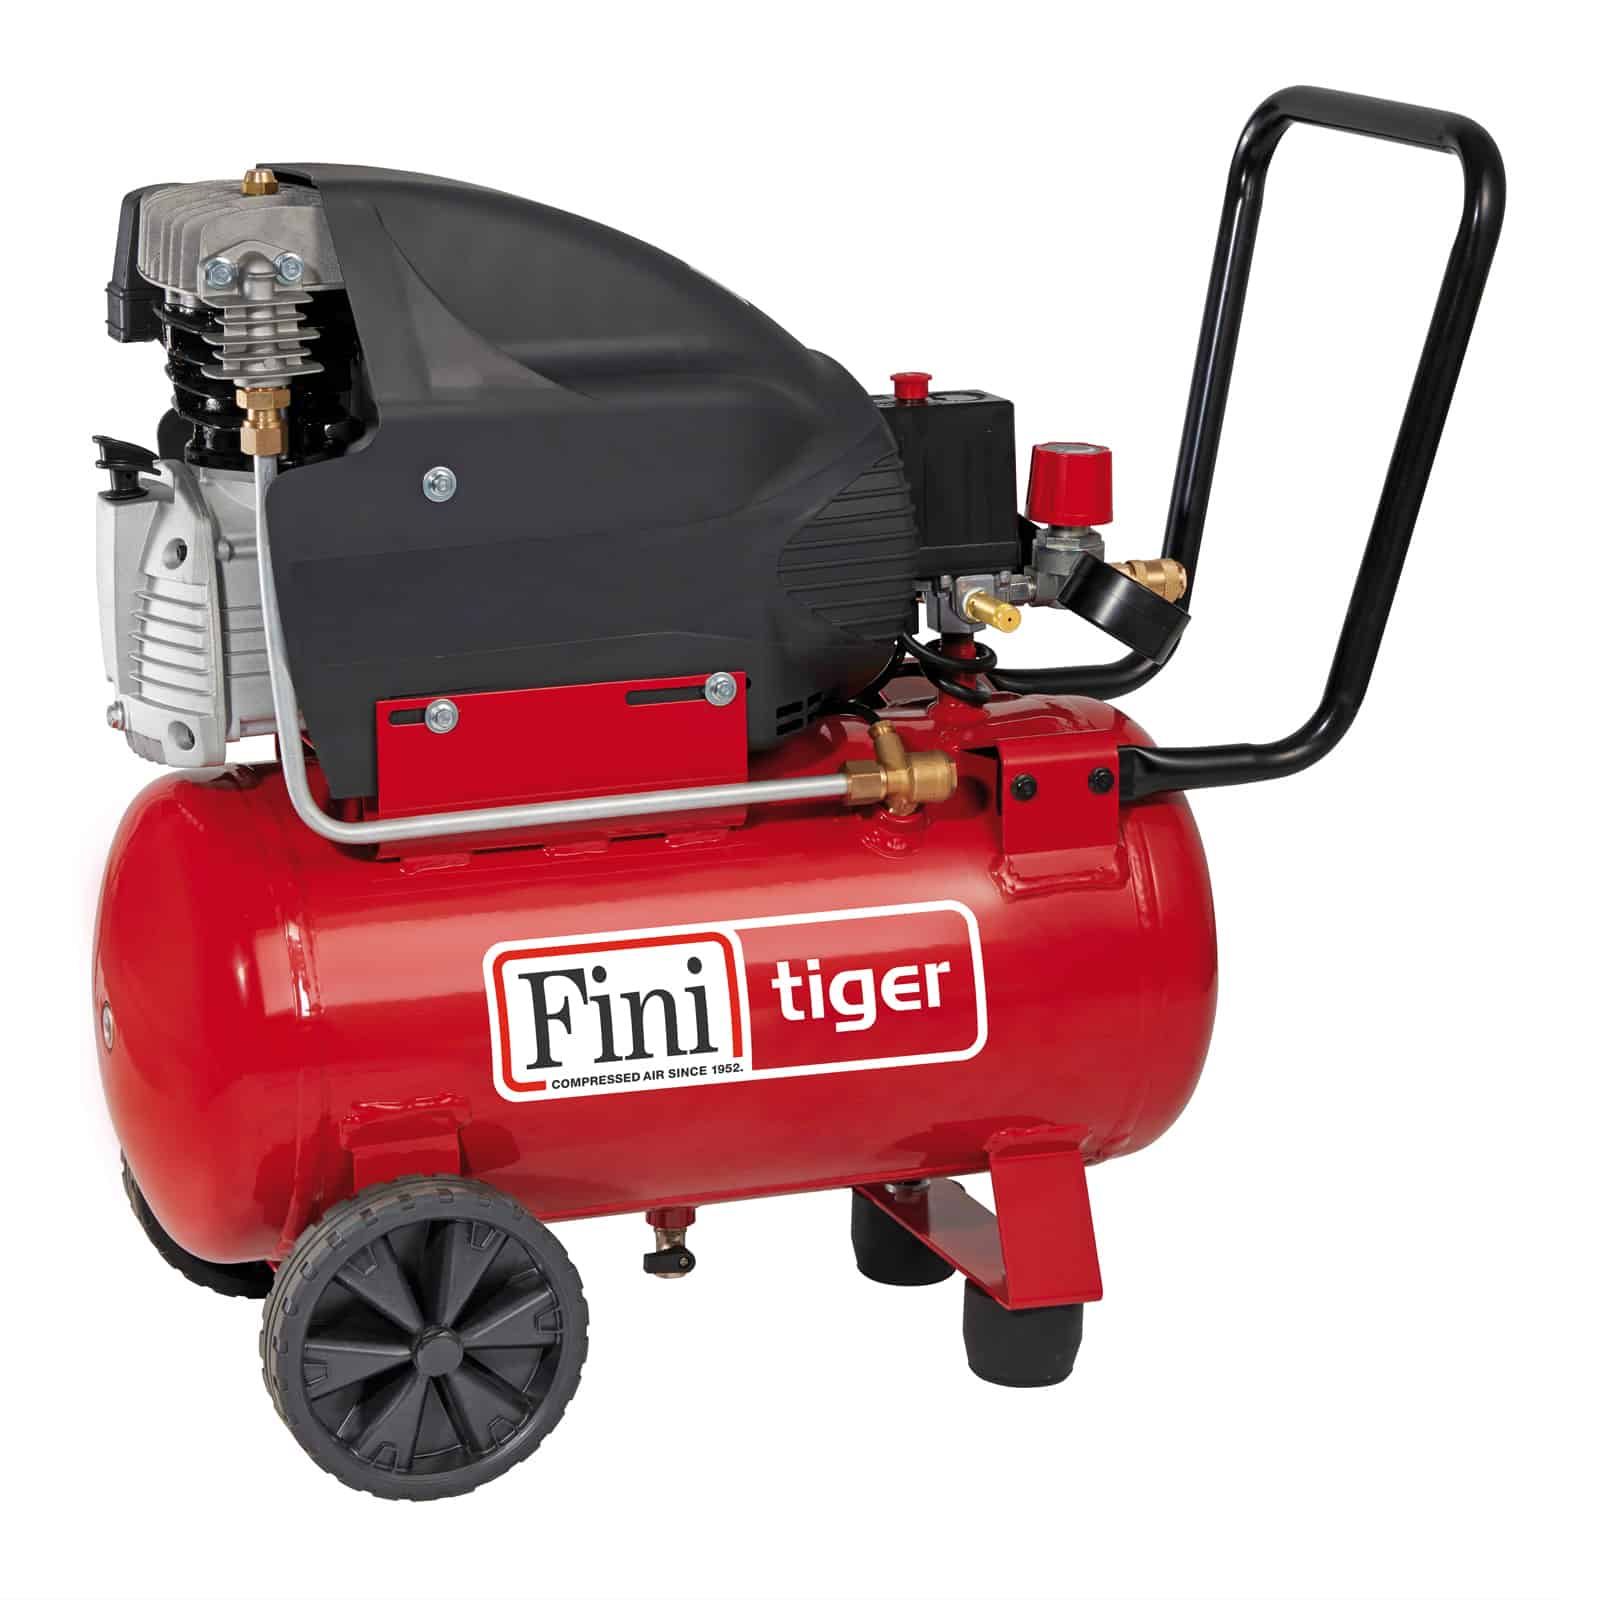 Tiger 285M Compressore coassiale lubrificato, indicato per soddisfare le esigenze di hobbisti e professionisti.